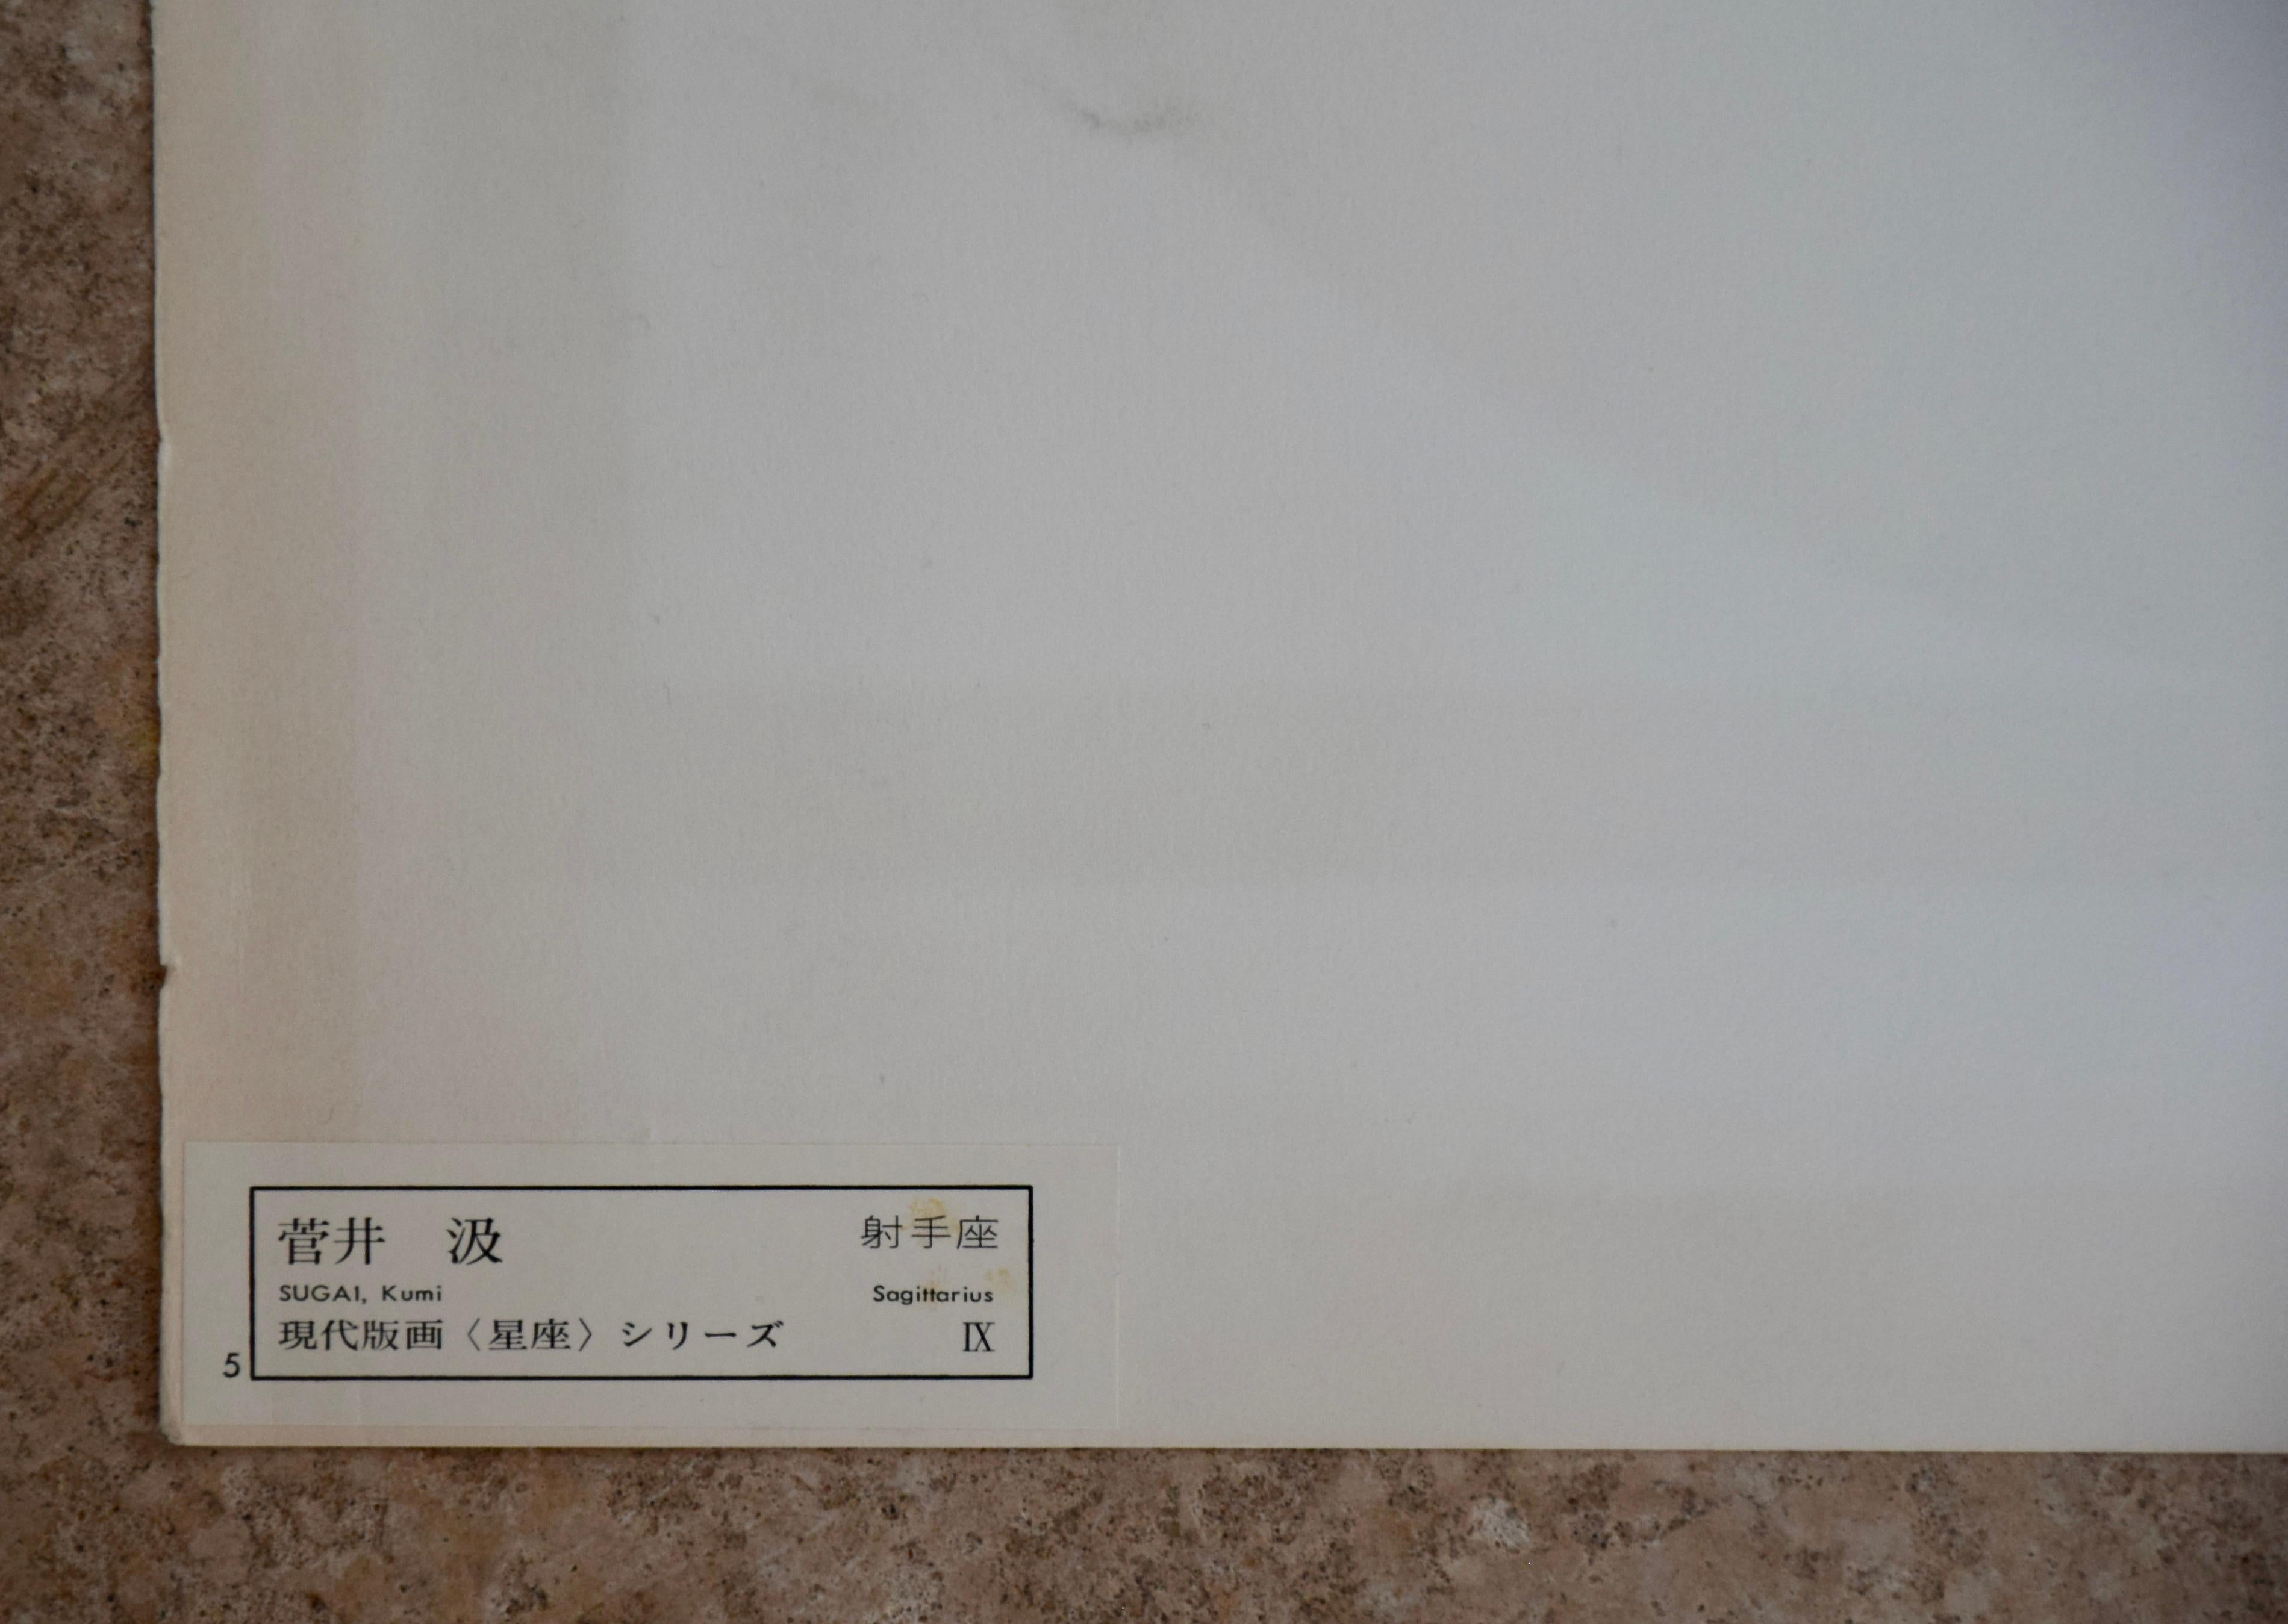 Kumi Sugaï, l'un des peintres japonais les plus célèbres du XXe siècle.

Belle édition en tirage limité Signe du Zodiac IX Sagittaire par Kumi Sugaï 1973. Signé et numéroté au crayon par l'artiste 63/100.
53 x 50 cm sans cadre.
Cette œuvre d'art